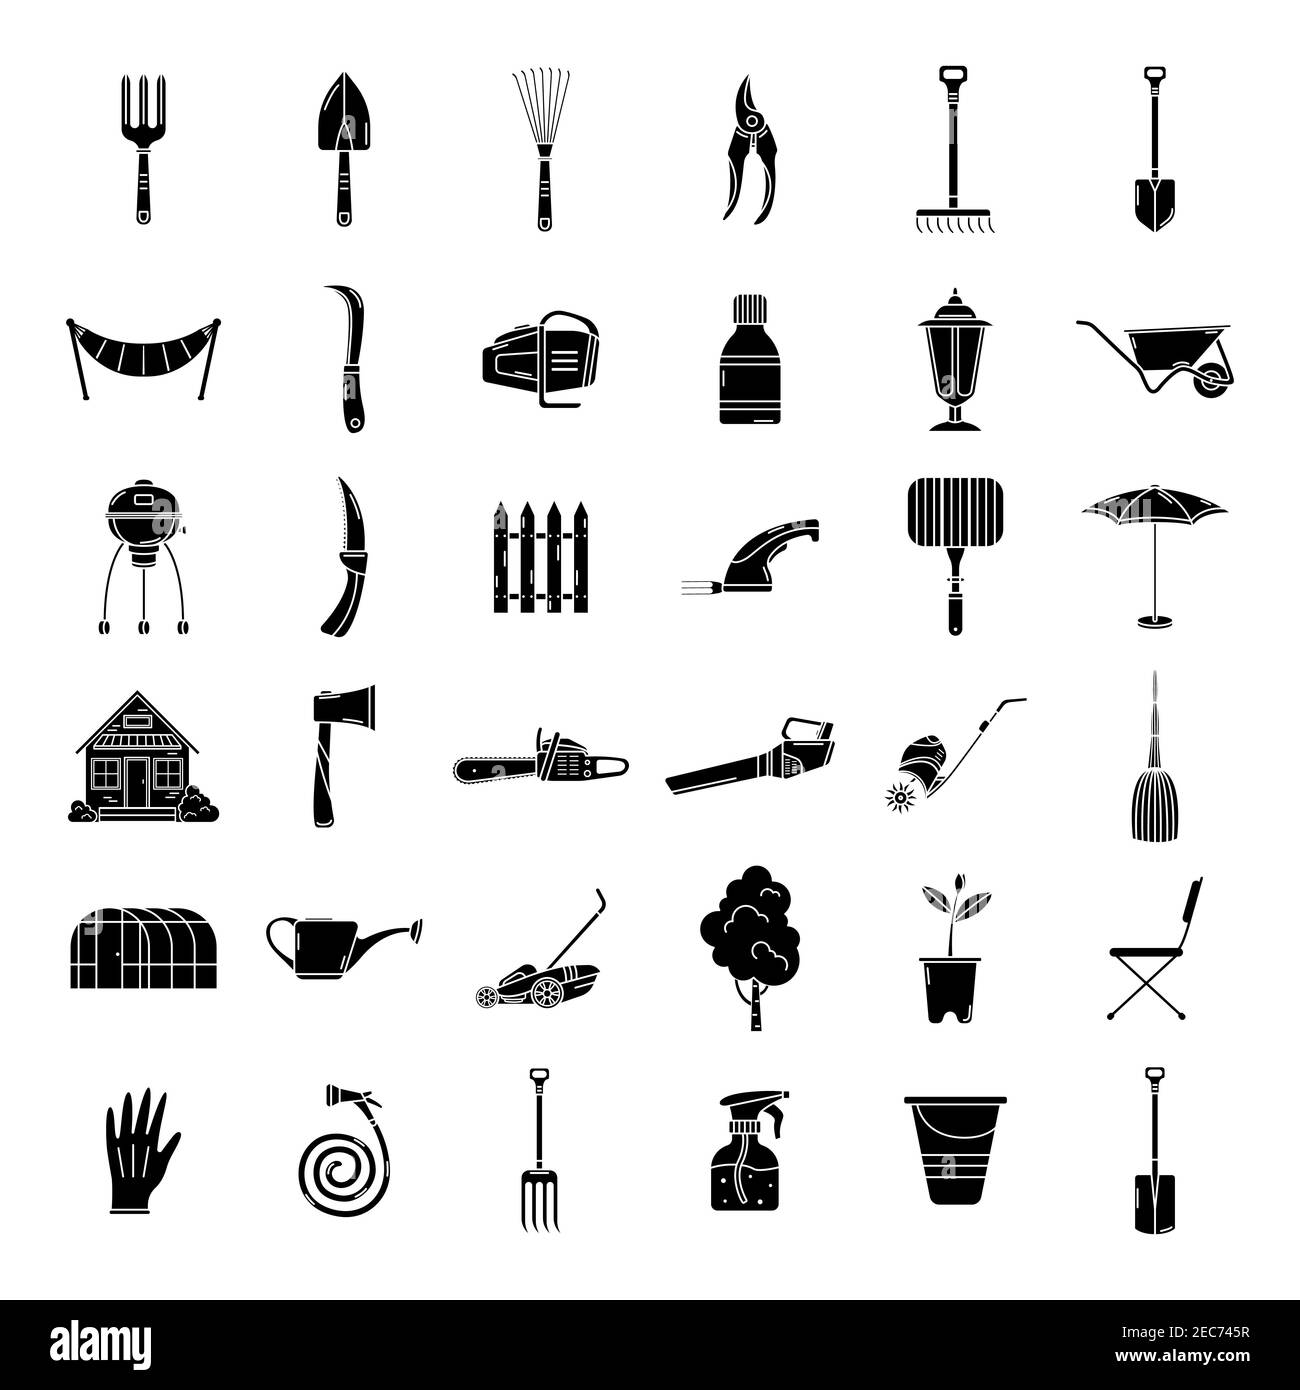 Eine Reihe von Garten-Ikonen, Werkzeuge, Erholung. Einfache Symbole für den Garten. Logo. Stock Vektor